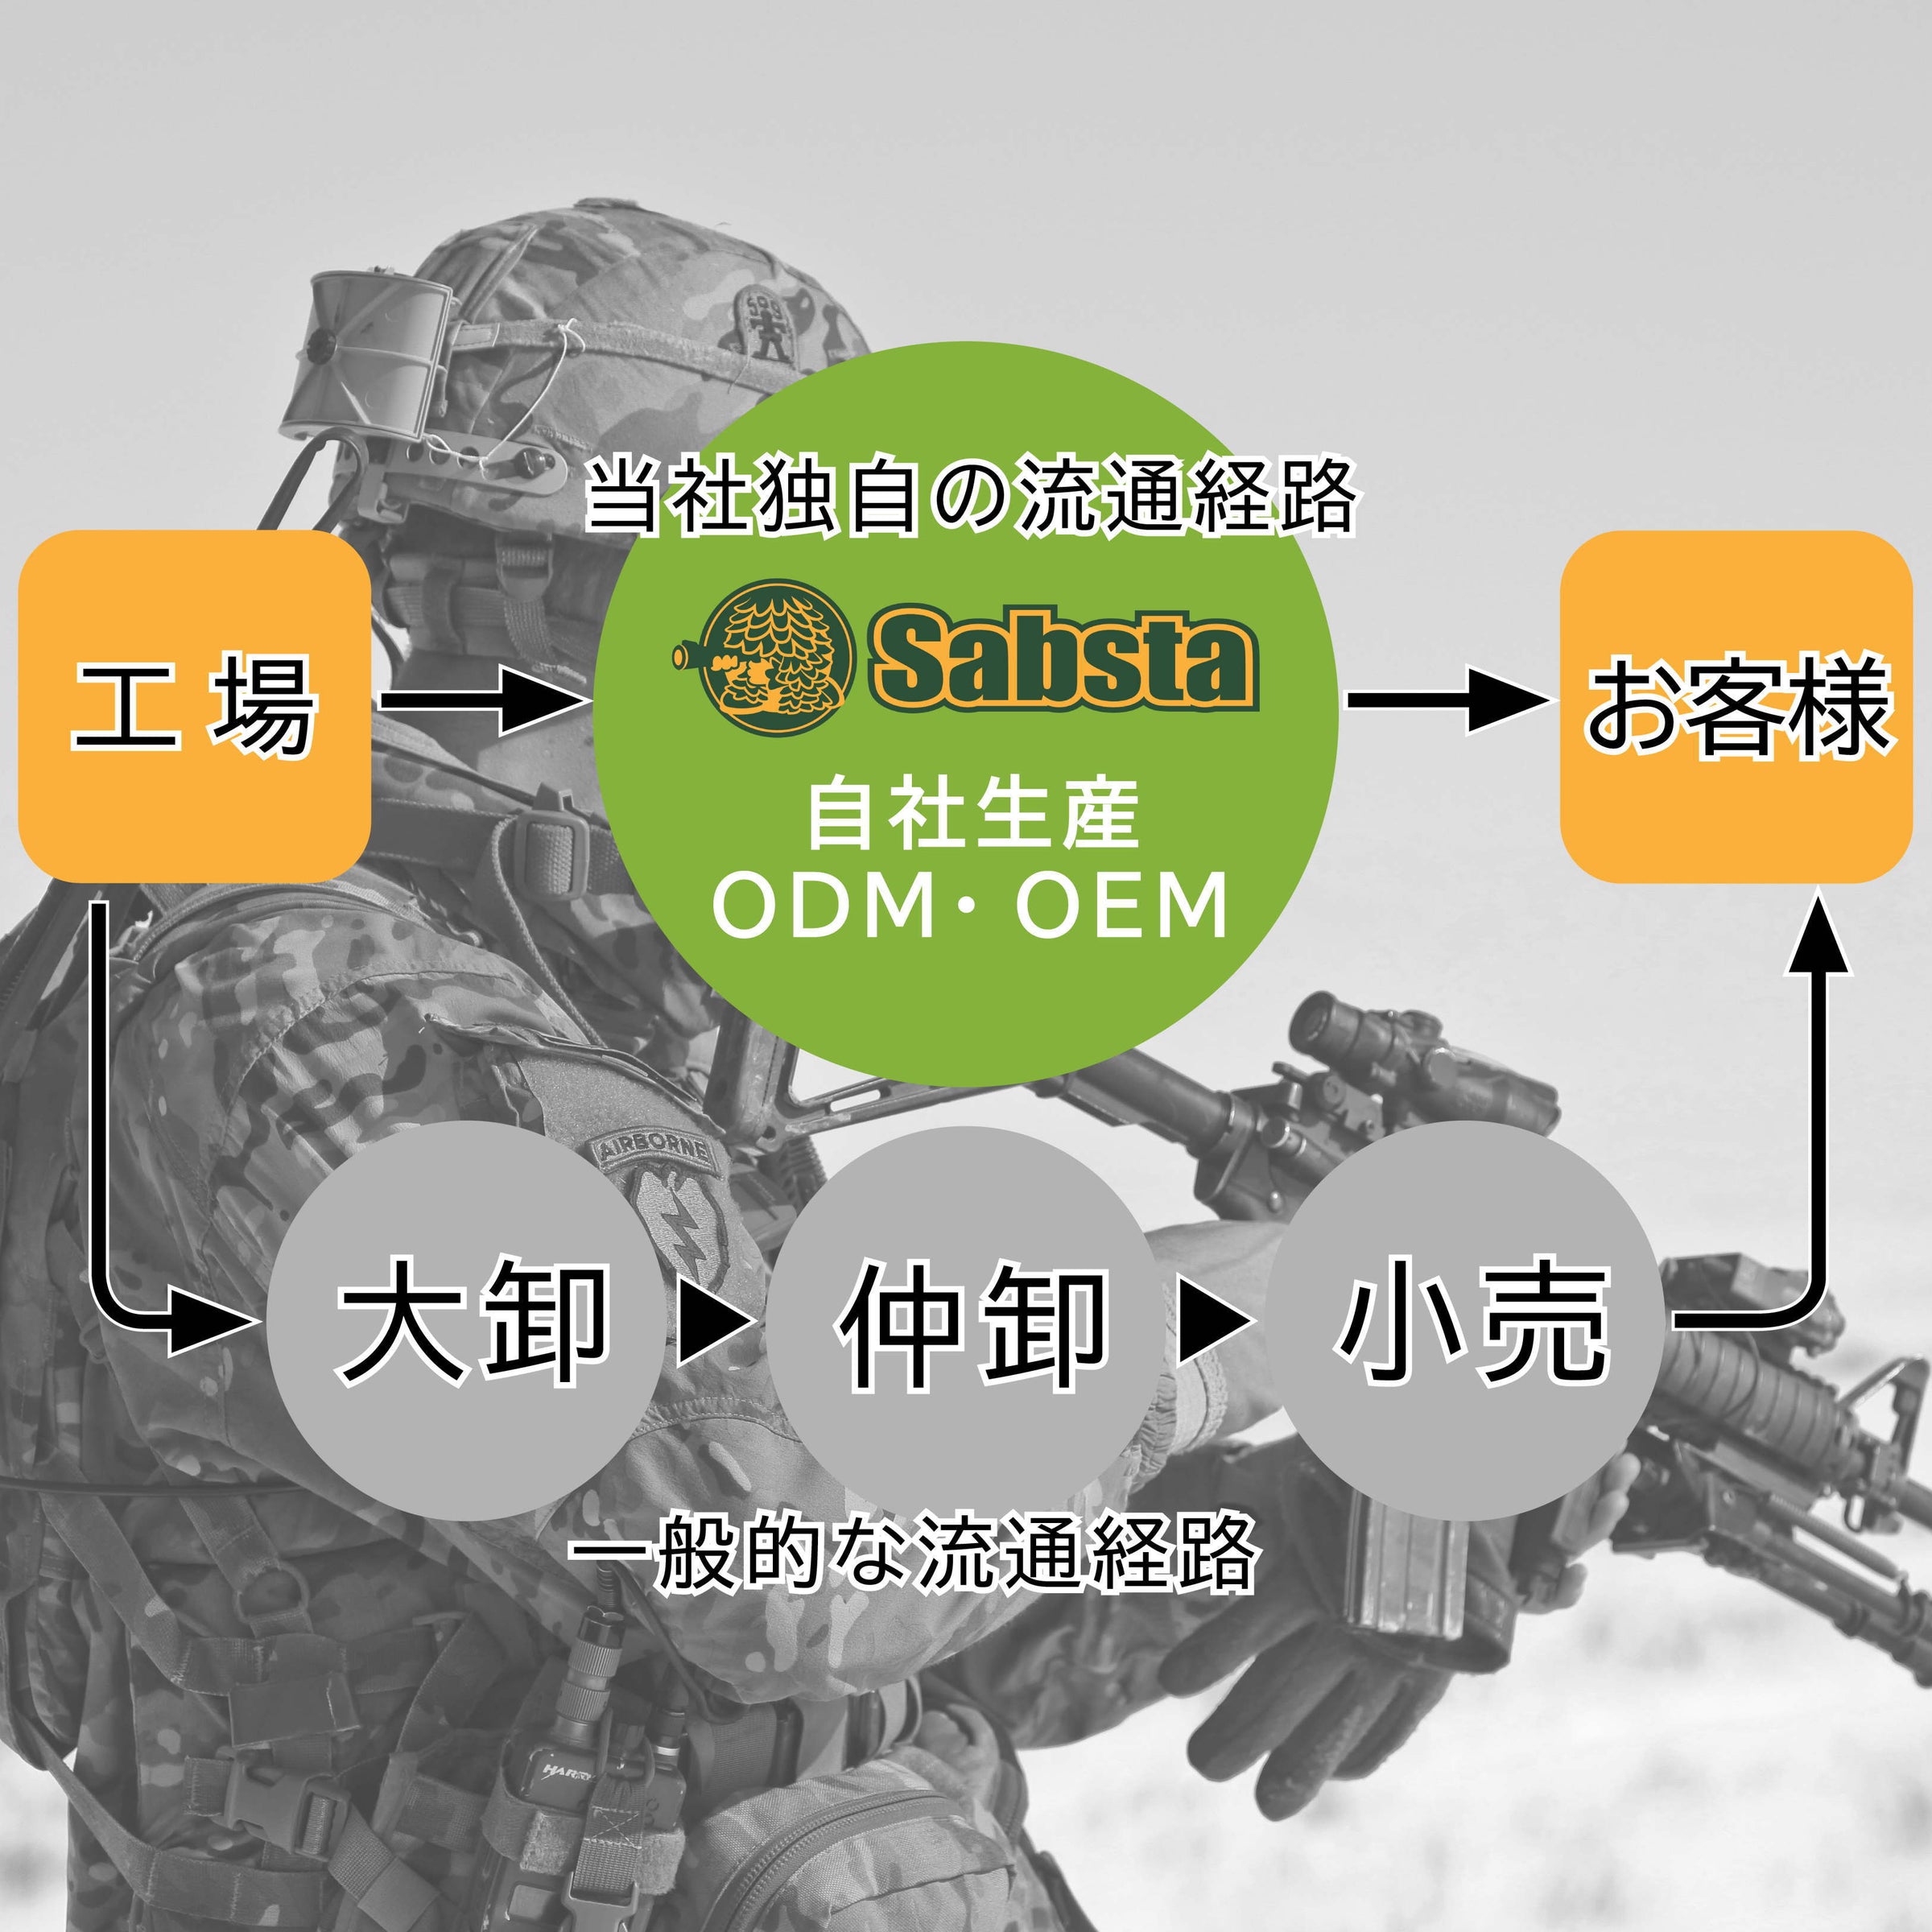 送料無料/即日発送】MP5 G3対応 20mmレイルマウント アルミ合金 次世代